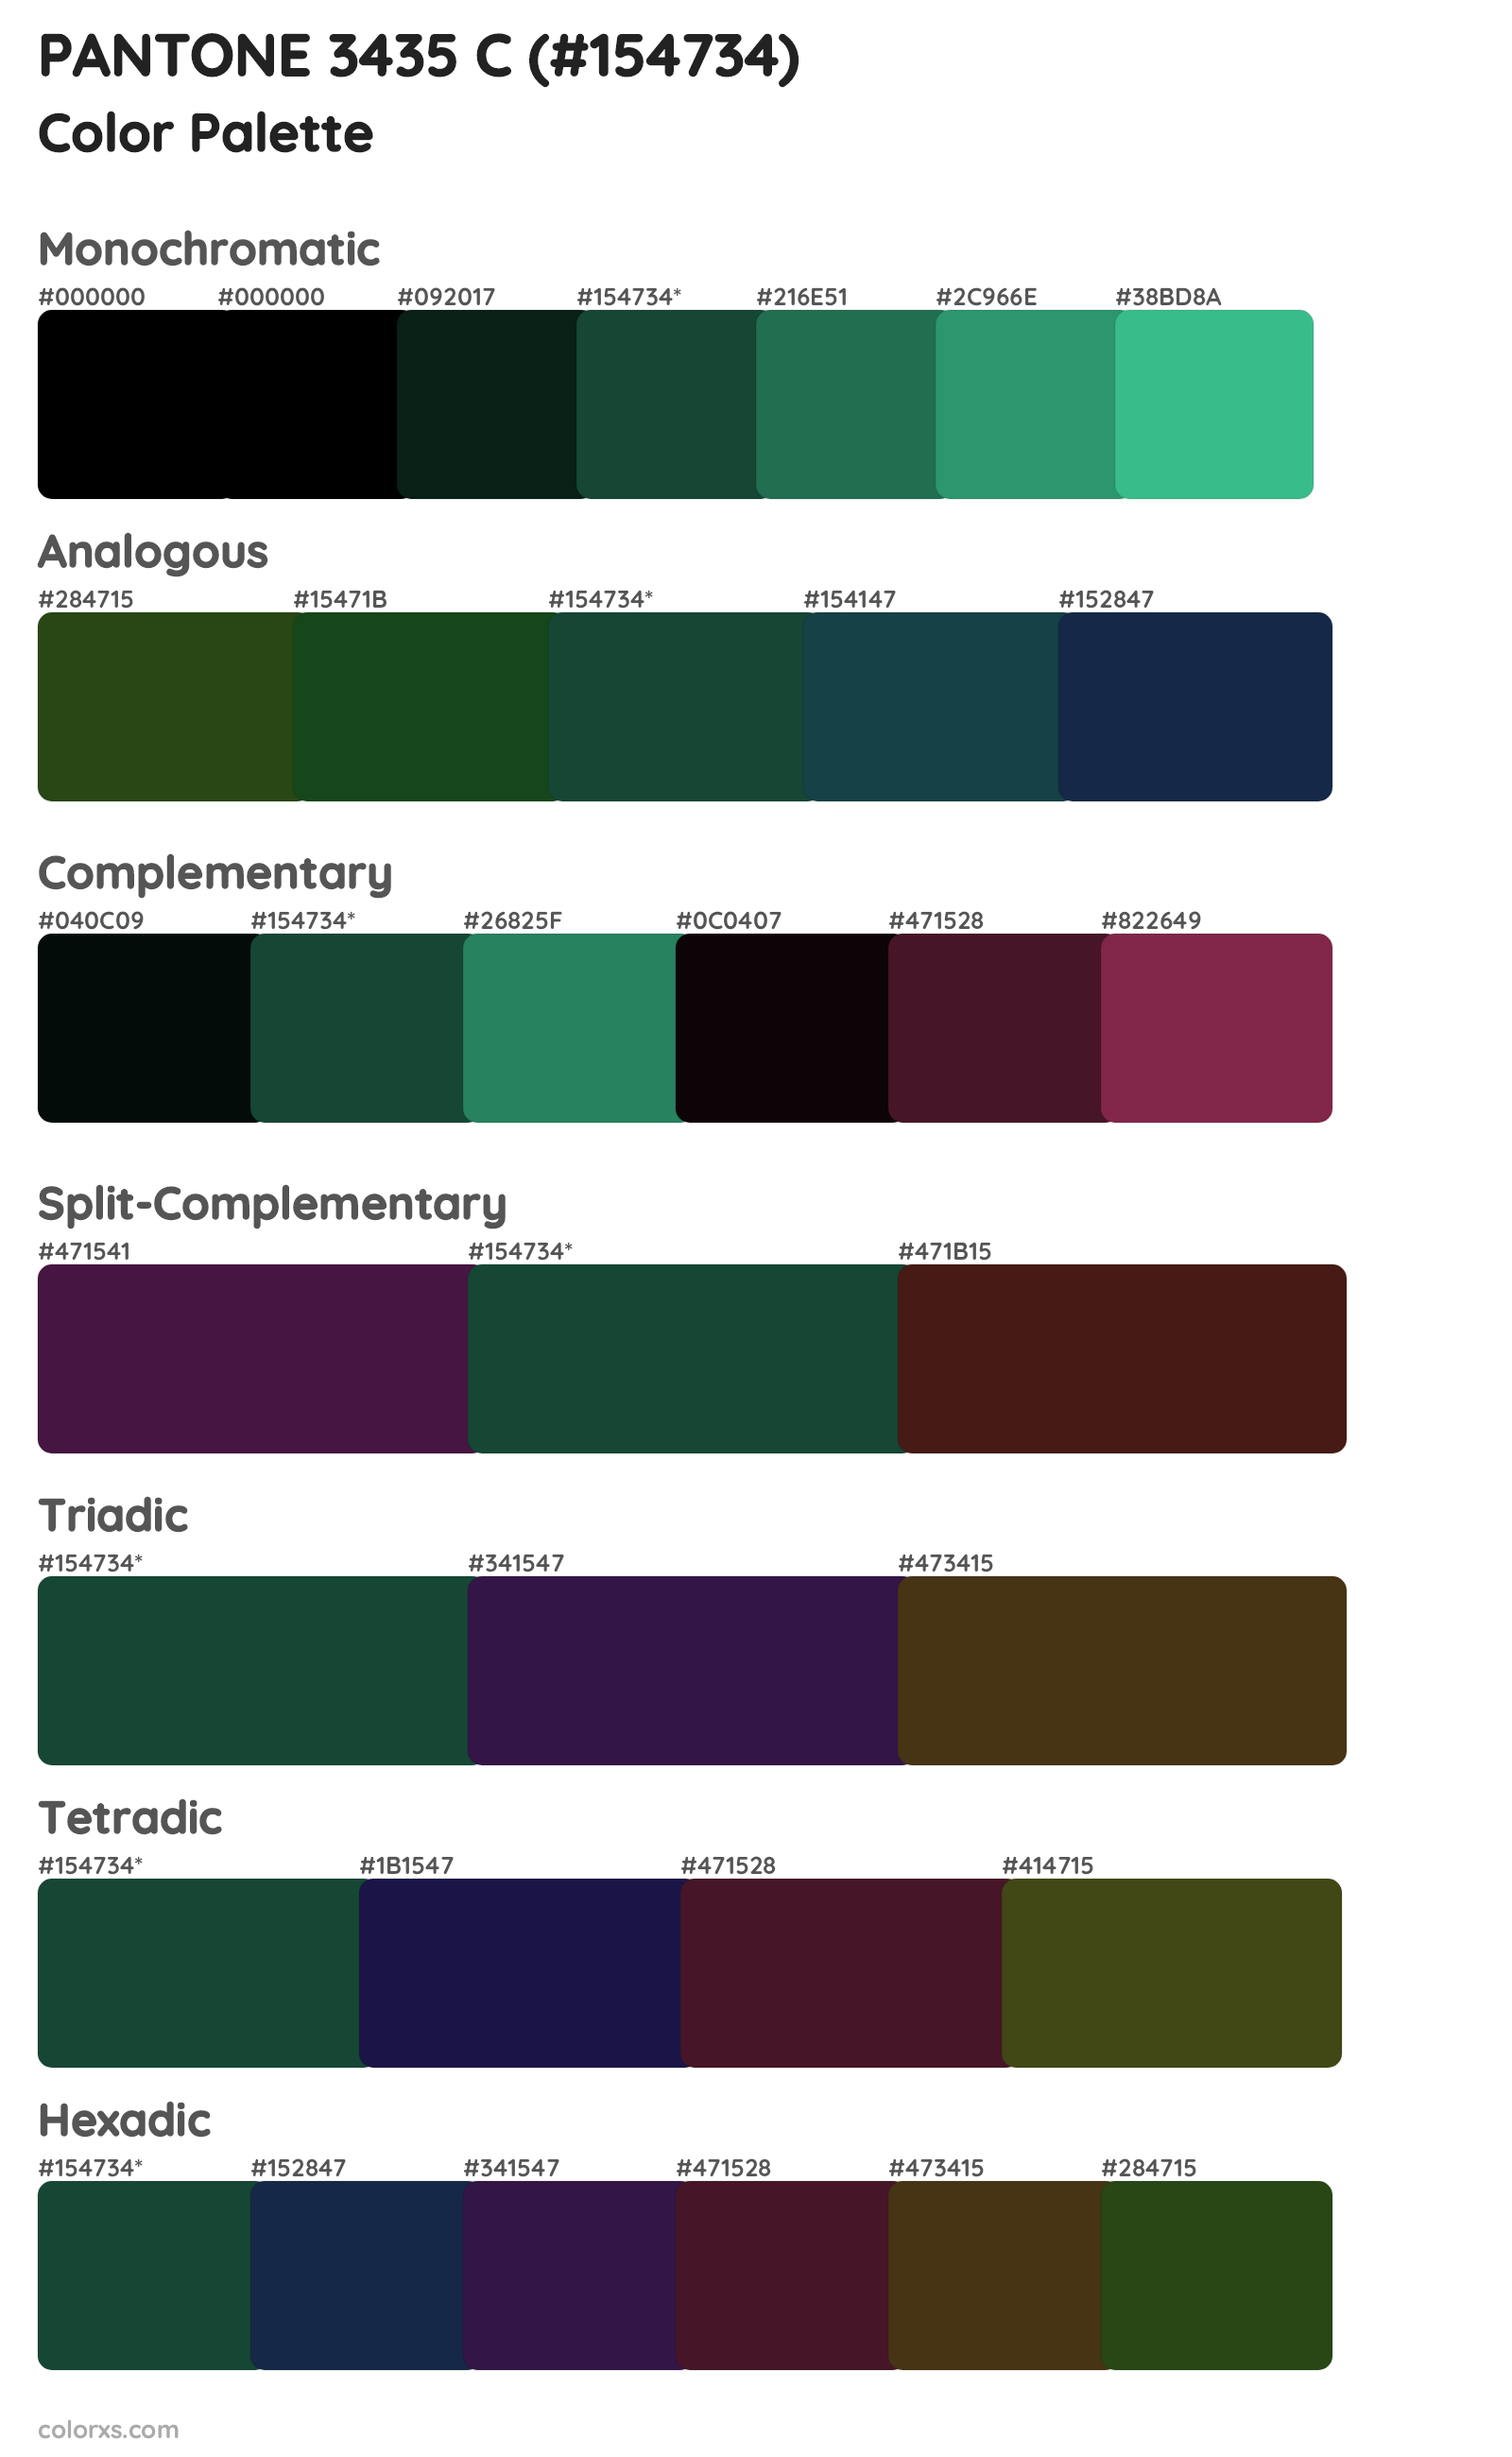 PANTONE 3435 C Color Scheme Palettes